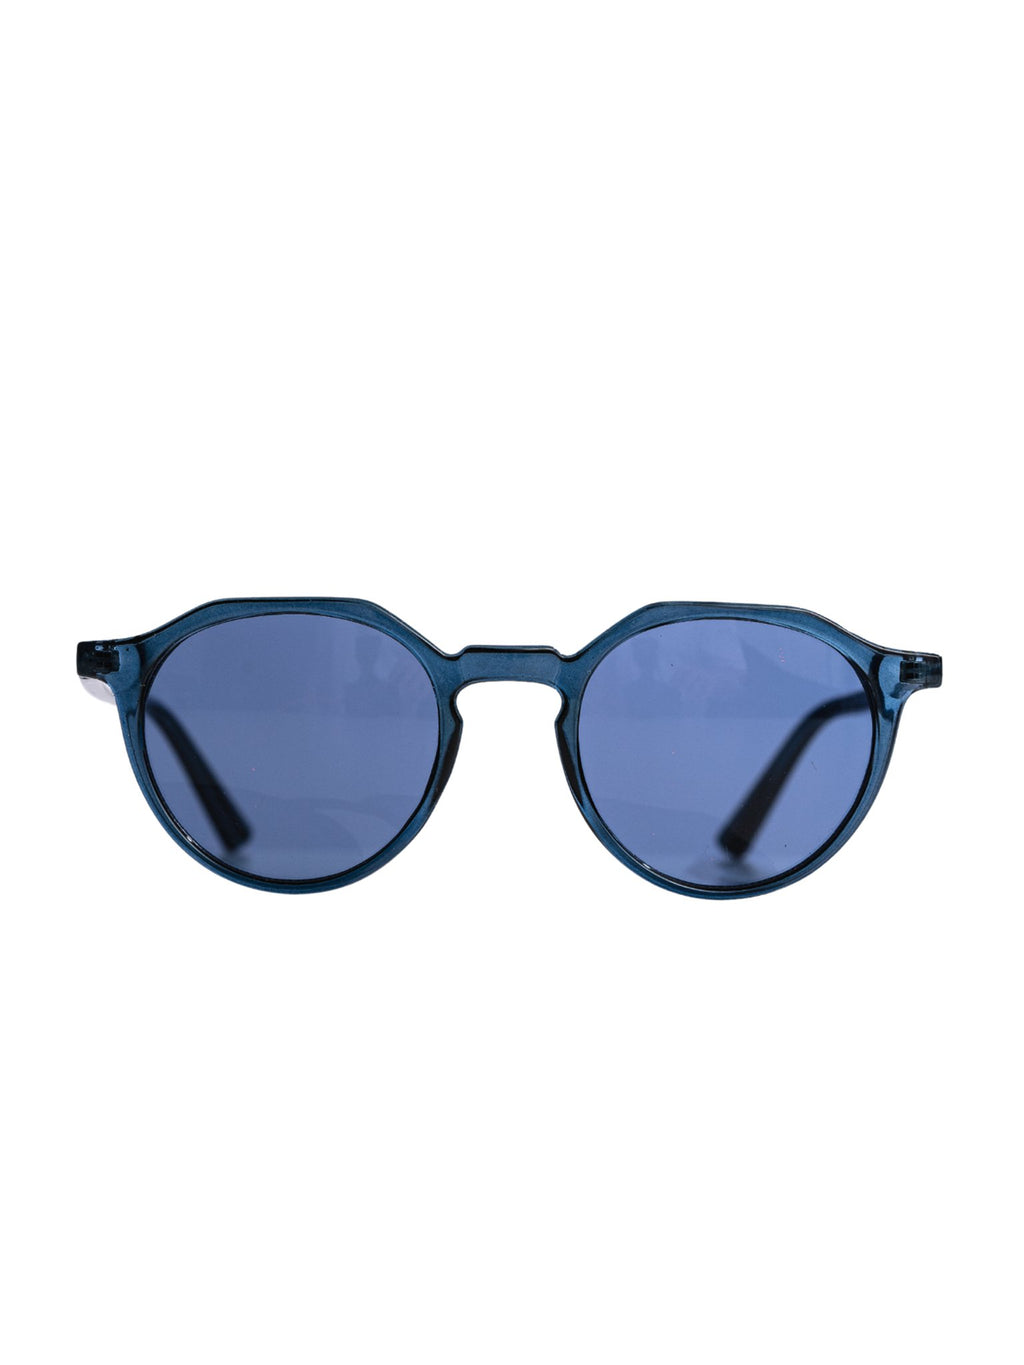 Runde Sonnenbrille - blau